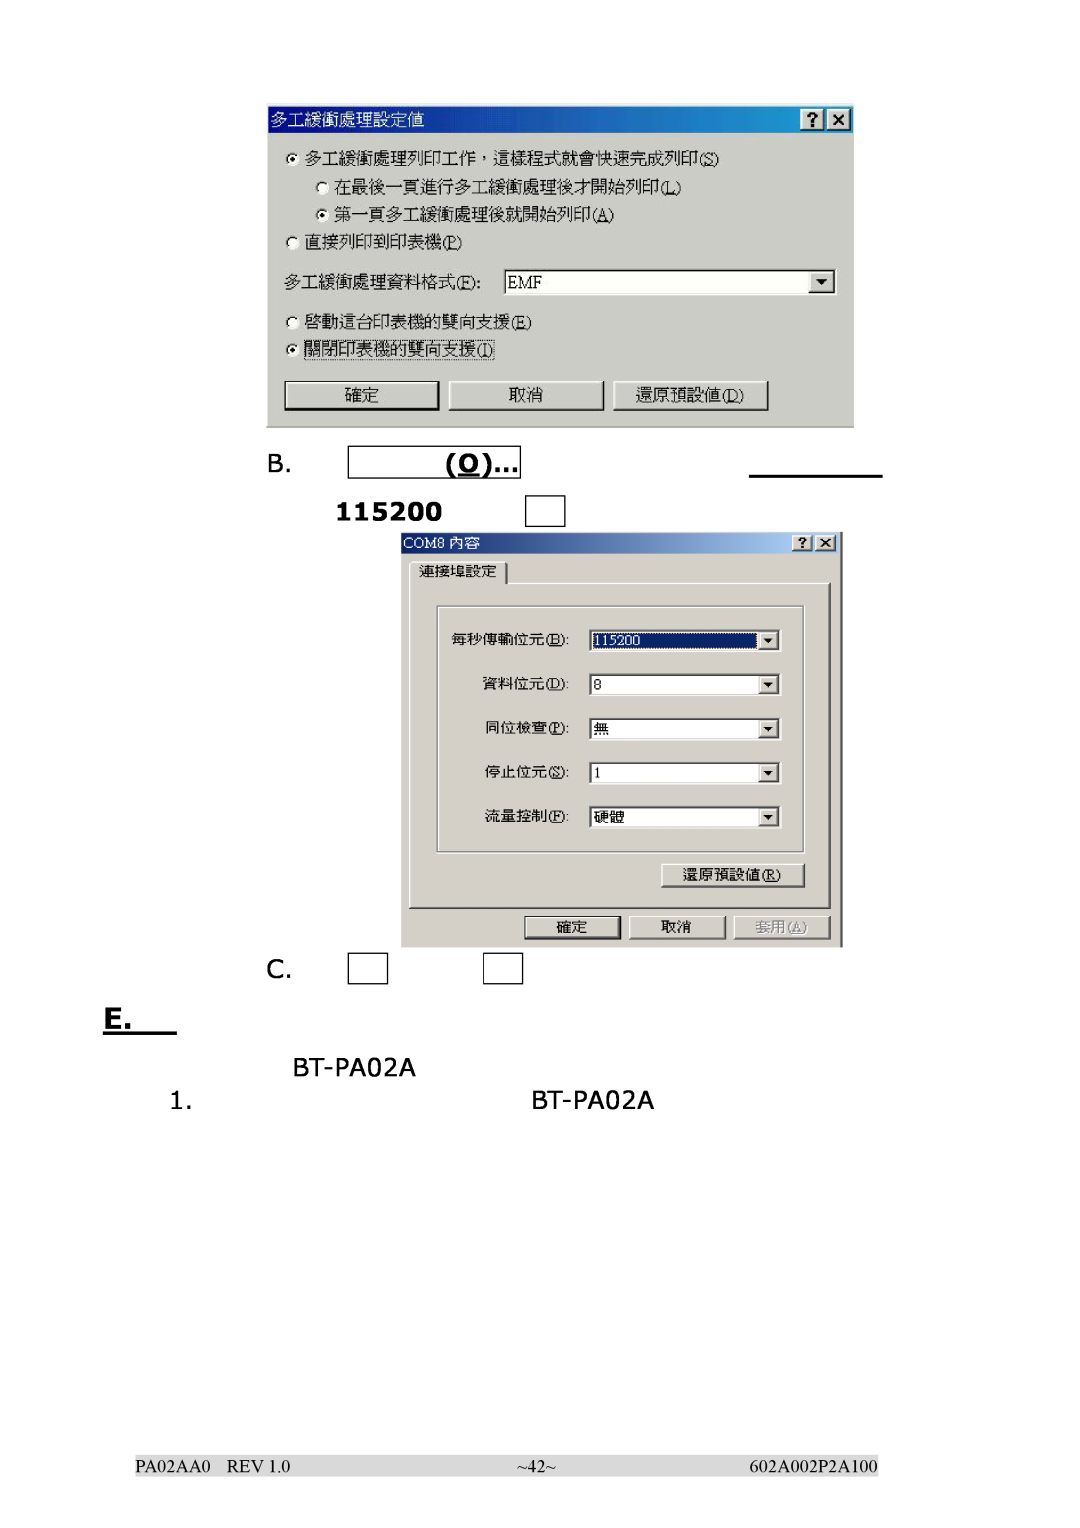 EPoX Computer manual B. O…, 115200 C, BT-PA02A 1. BT-PA02A, PA02AA0 REV, ~42~, 602A002P2A100 